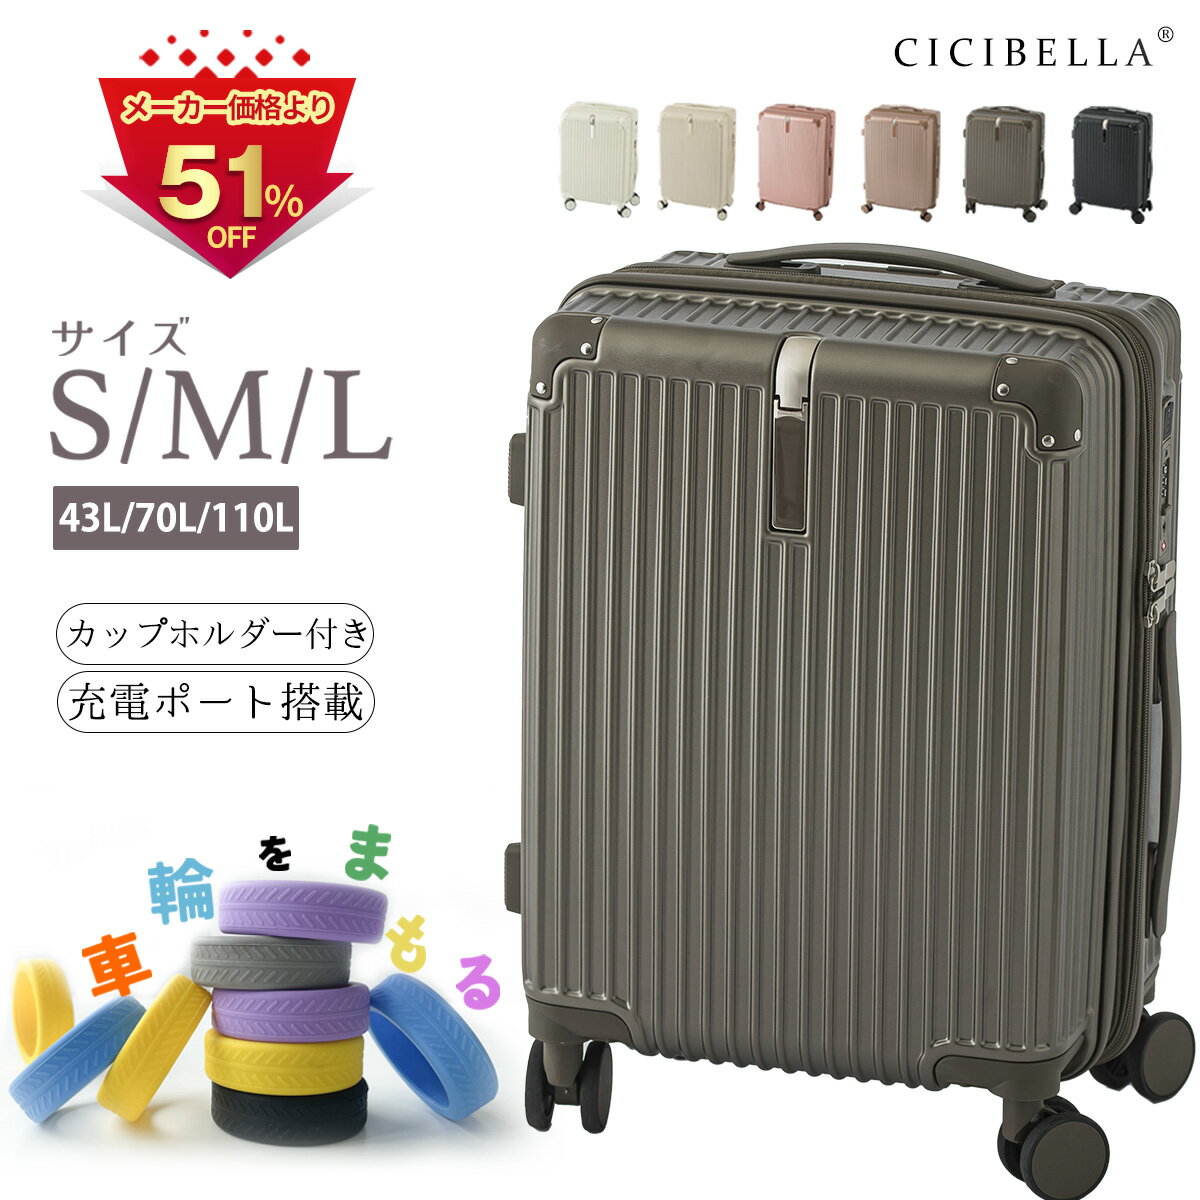 スーツケース USBポート付き キャリーケース S/M/L 43L/70L /110L機内持ち込み 3-7日用 泊まる カップホルダー付き 軽量設計 多機能スーツケース 大容量 GOTOトラベル 国内旅行 送料無料CICIBELLA